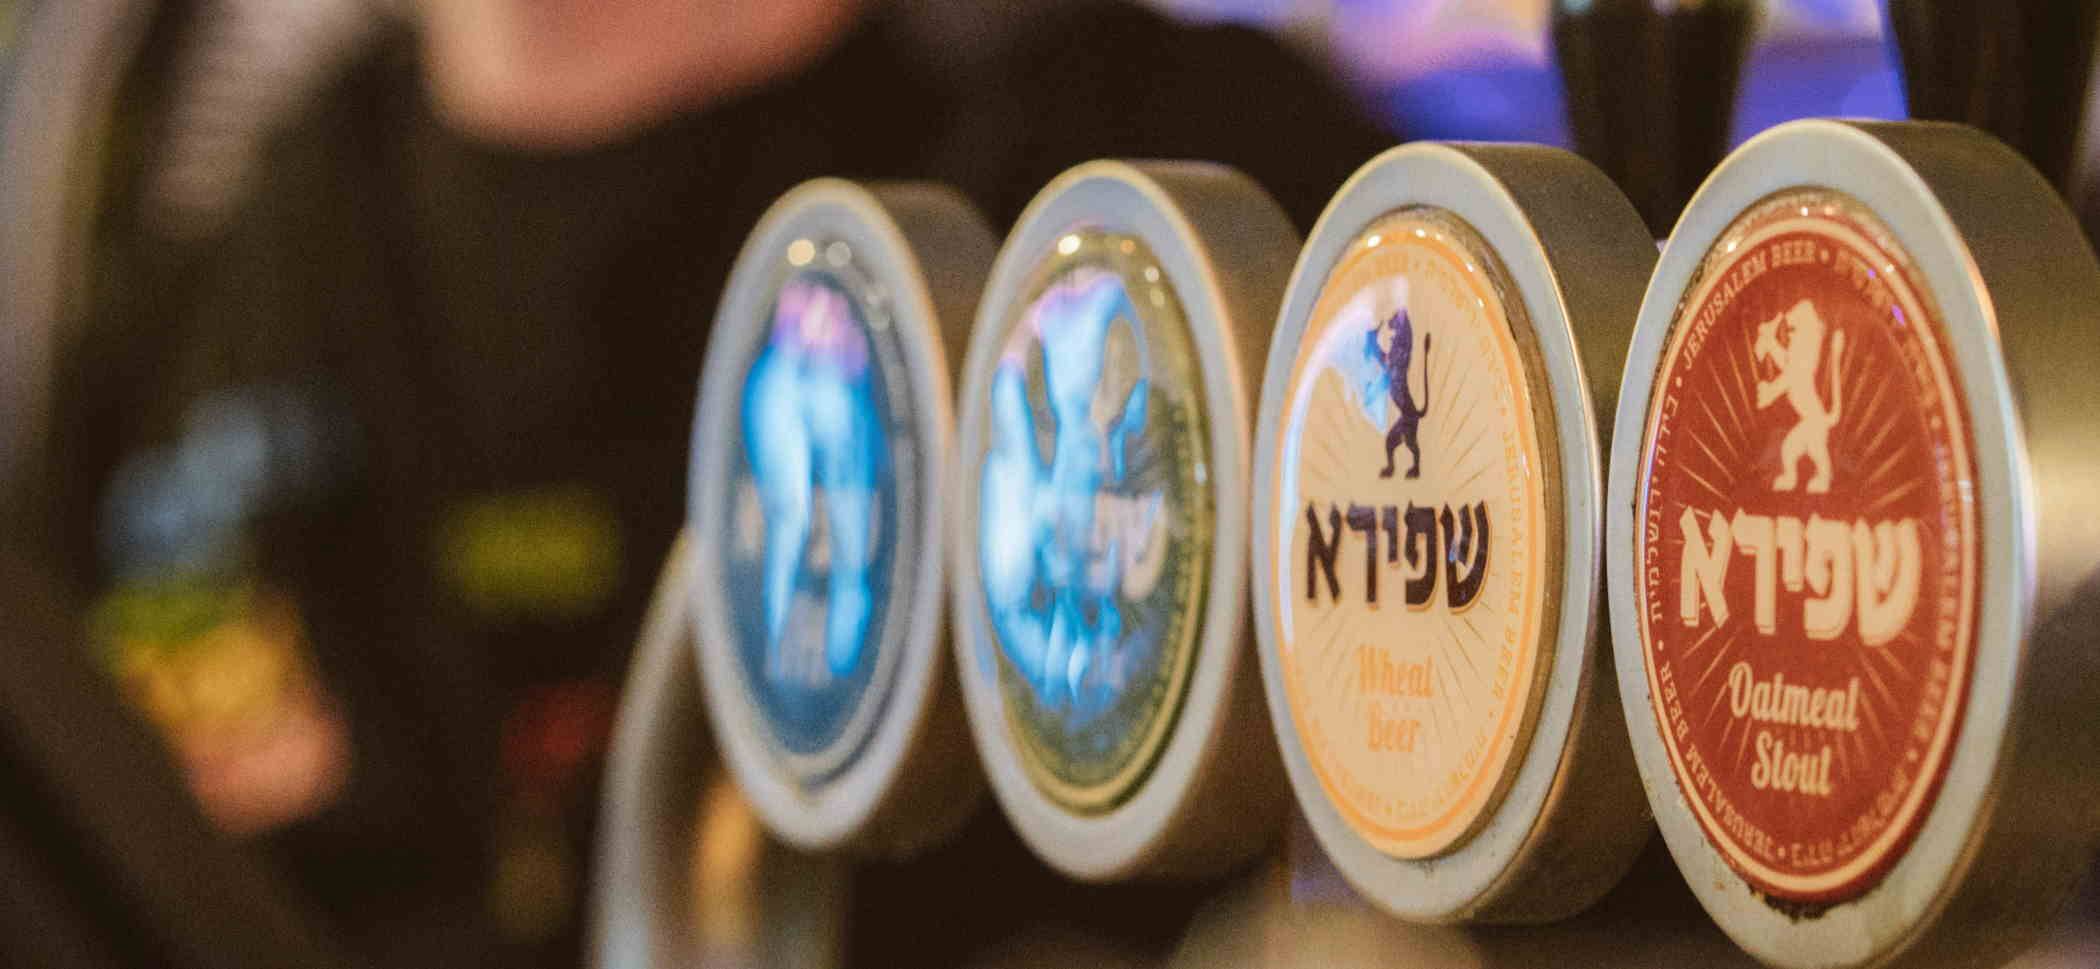 israeli beer